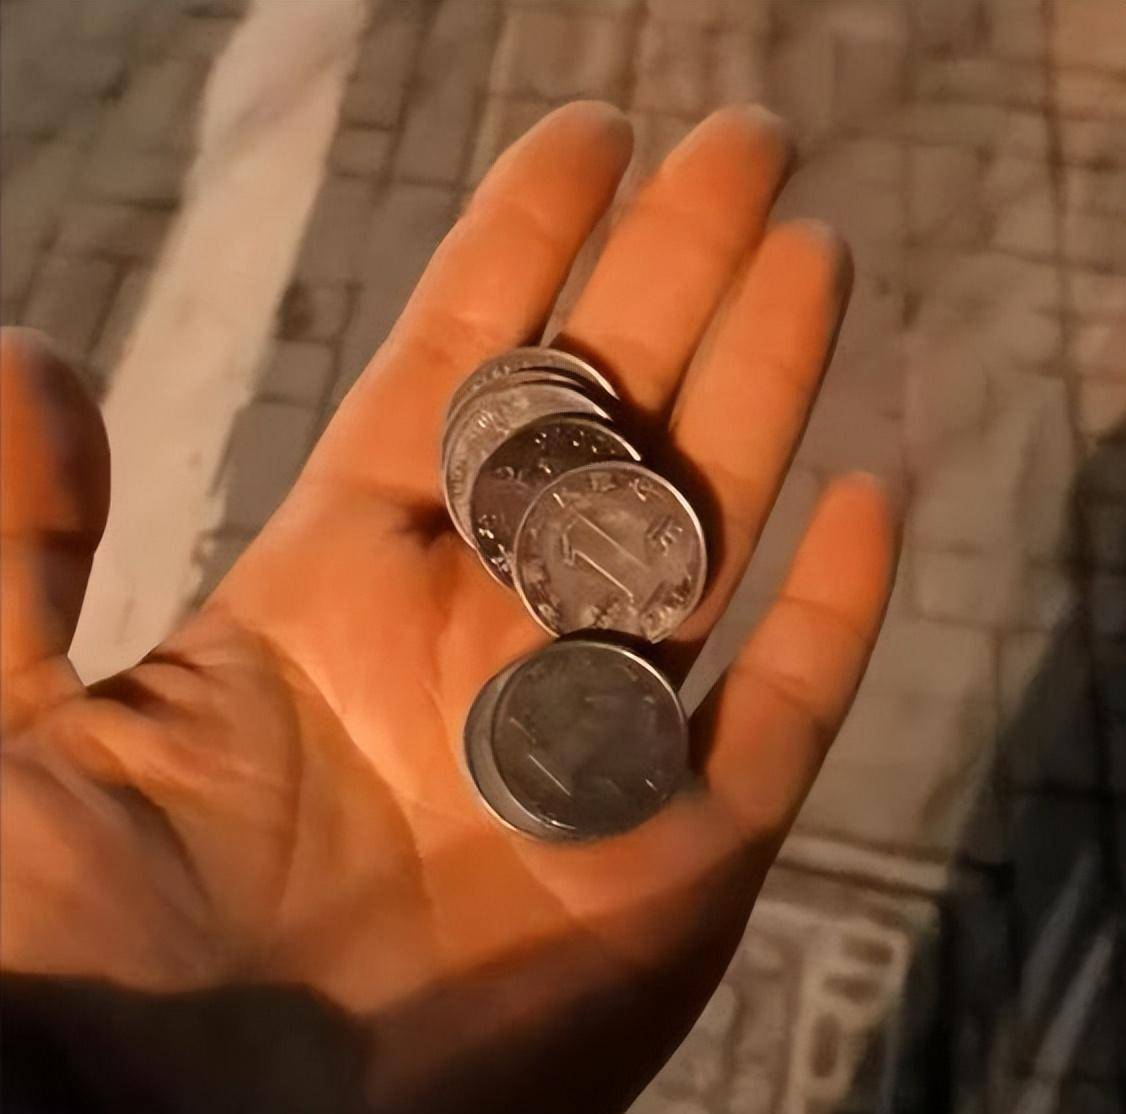 女子晚上在十字路口捡1路1元硬币,开心发视频被提醒,吓到连夜扔